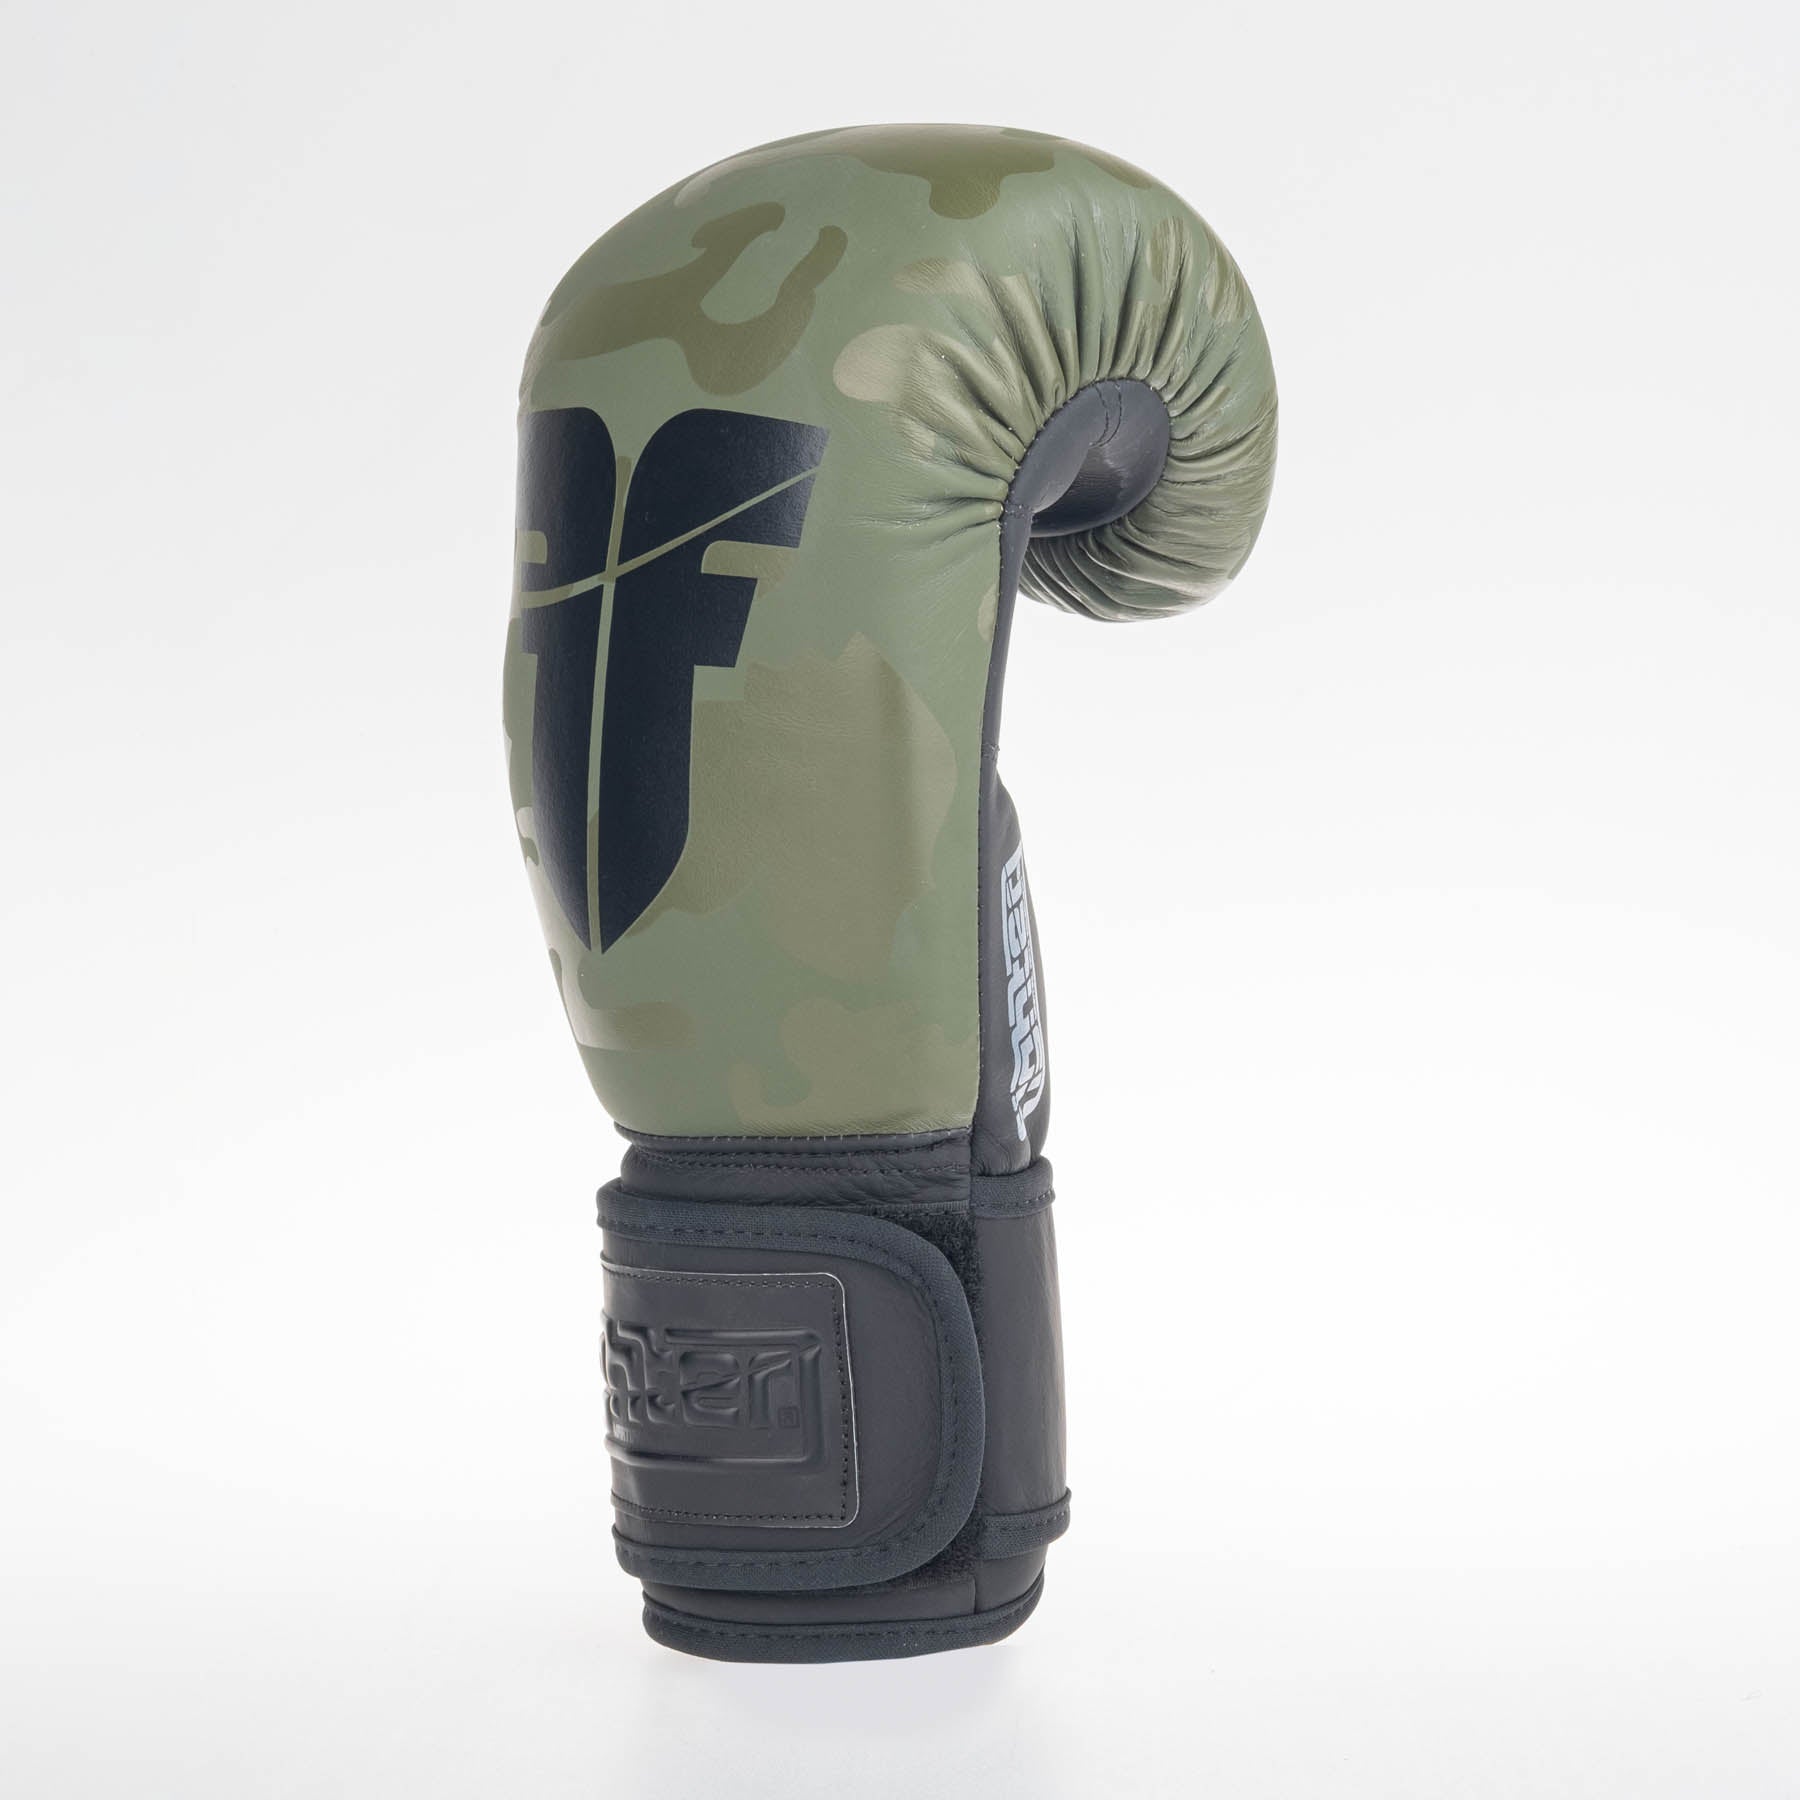 Fighter Boxing Gloves SIAM - khaki/camo